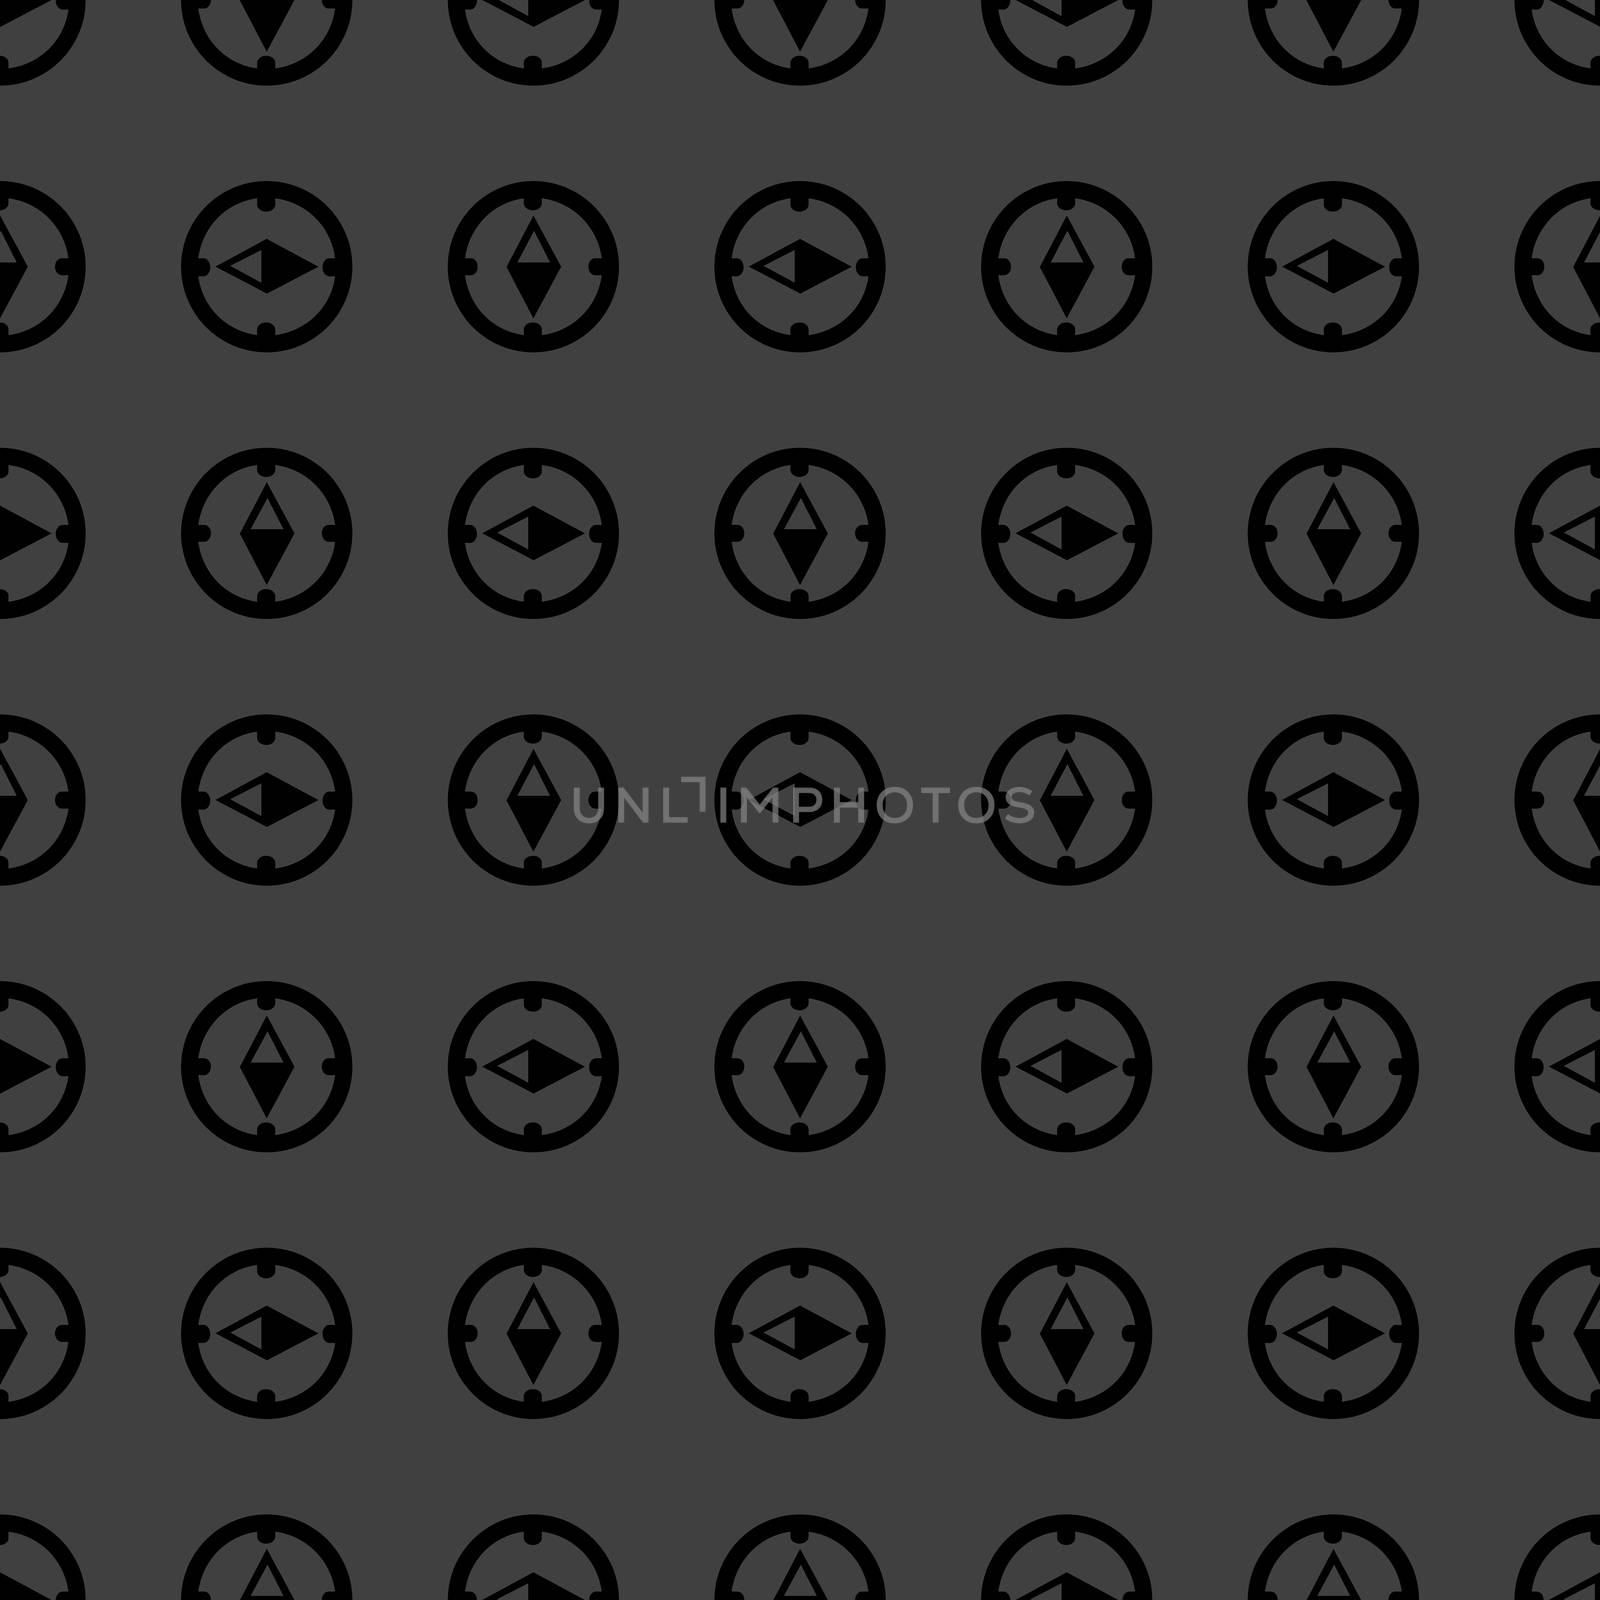 Compass web icon. flat design. Seamless gray pattern. by serhii_lohvyniuk